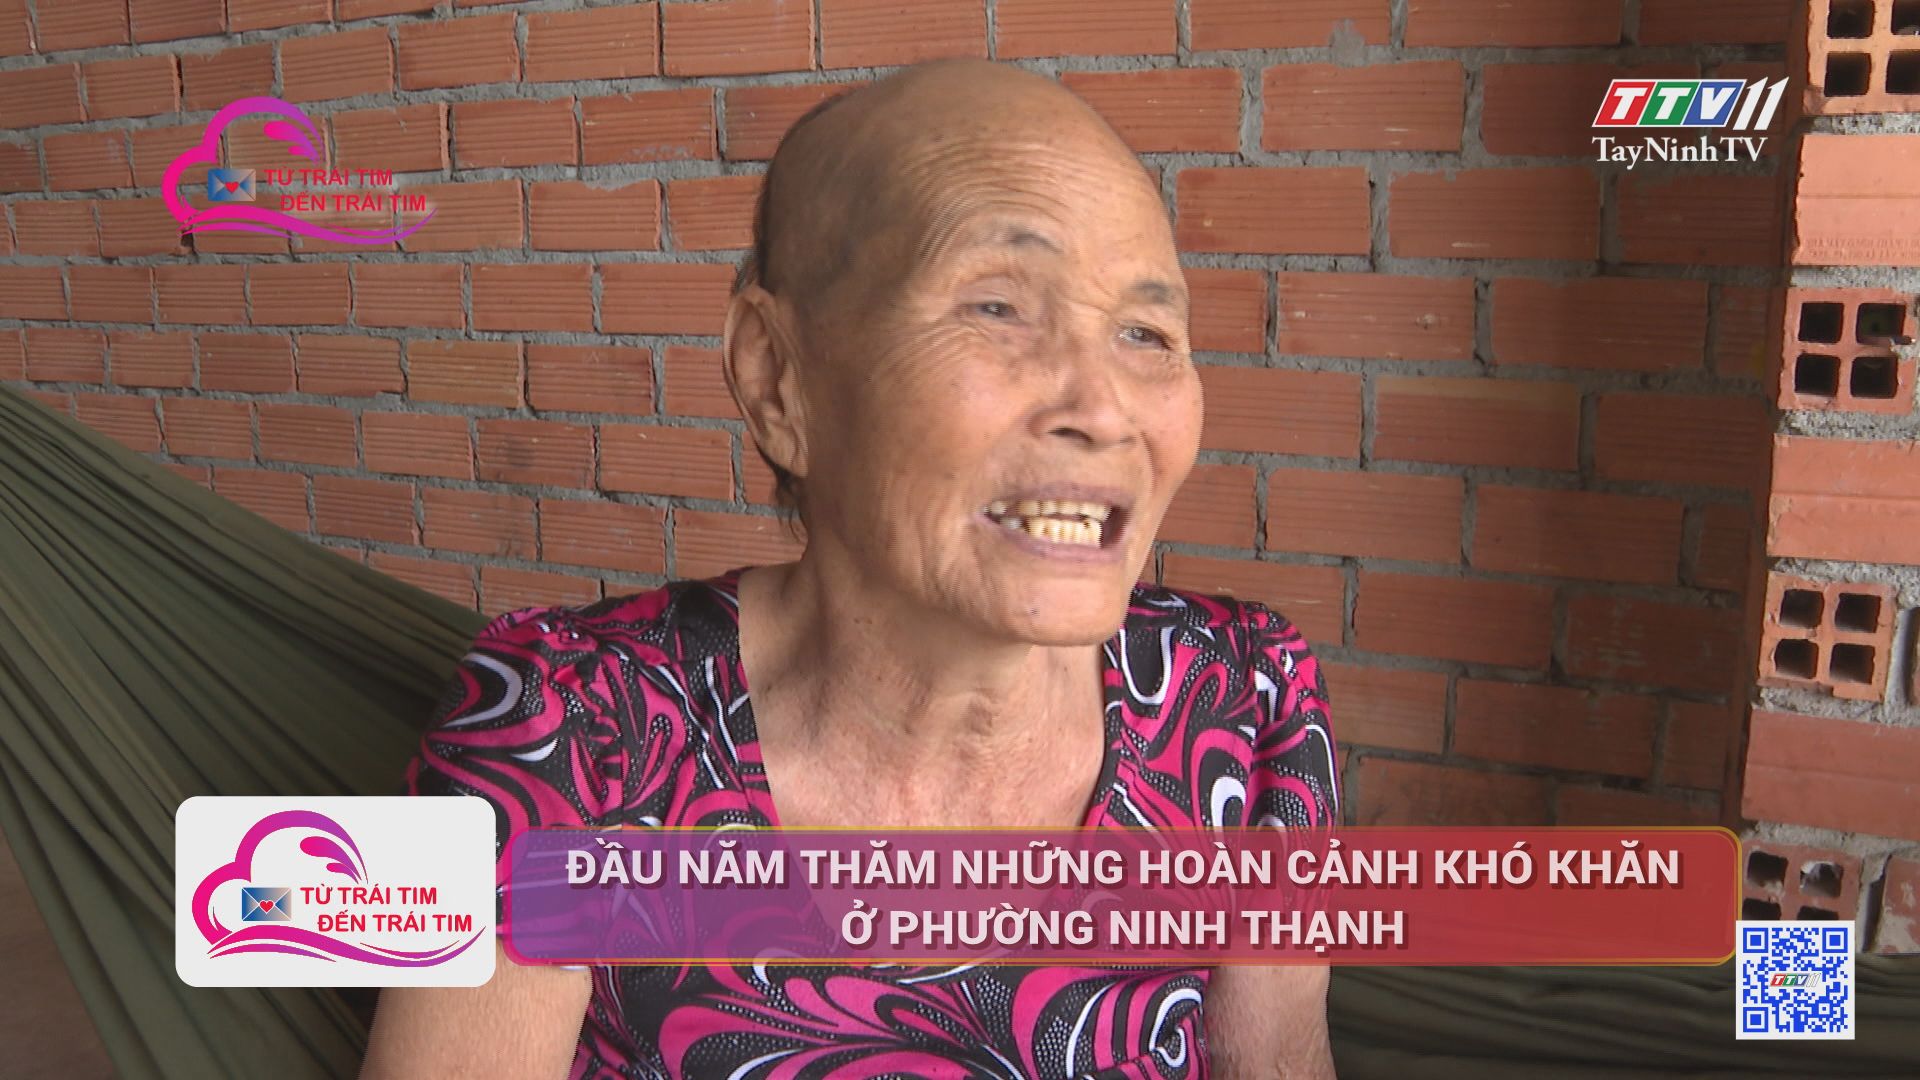 Đầu năm thăm những hoàn cảnh khó khăn ở phường Ninh Thạnh | TỪ TRÁI TIM ĐẾN TRÁI TIM | TayNinhTV